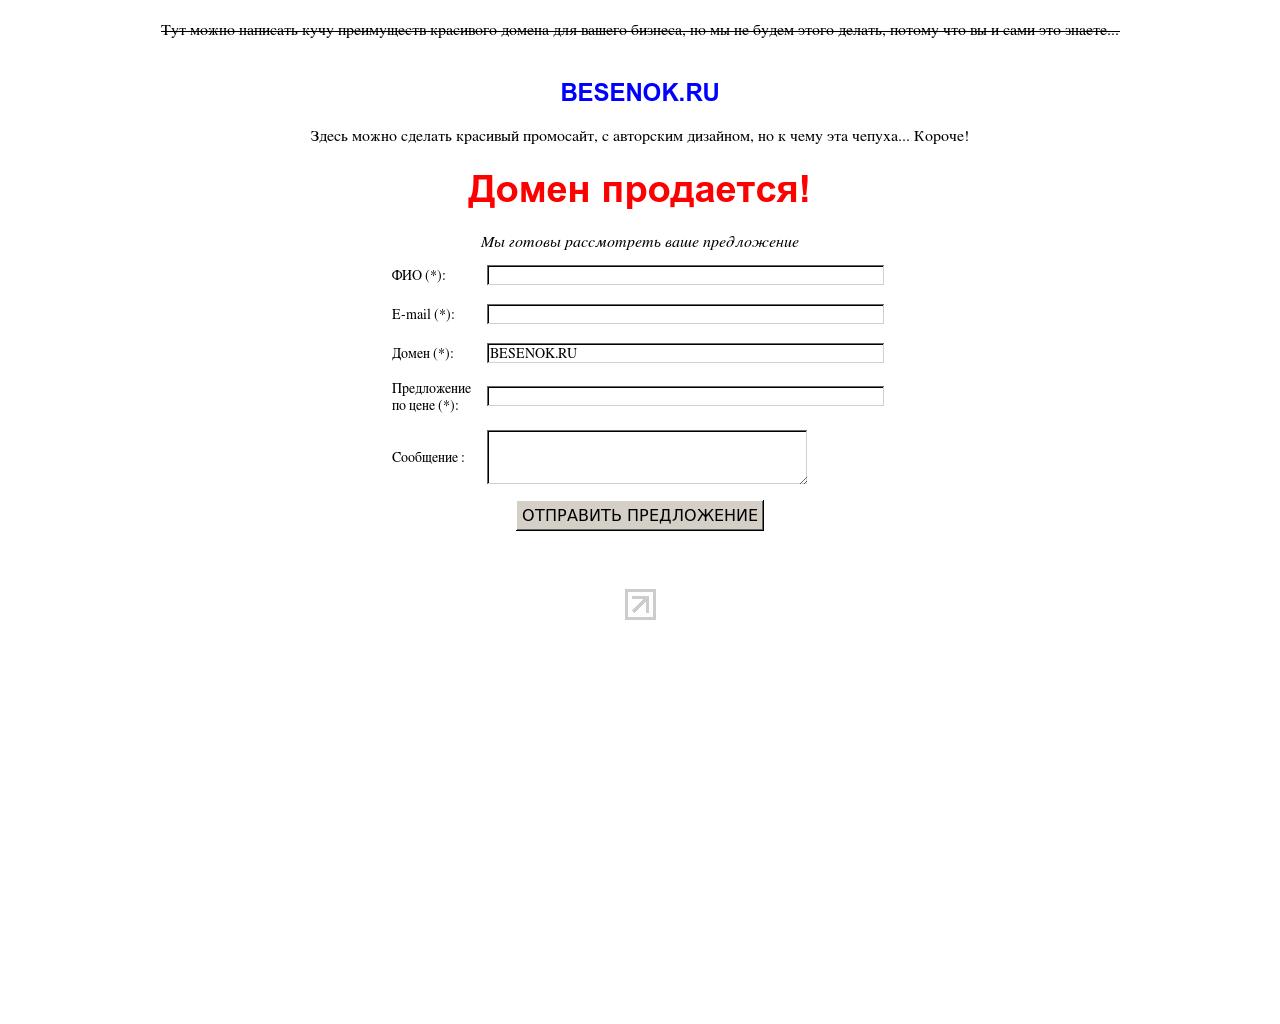 Изображение сайта besenok.ru в разрешении 1280x1024